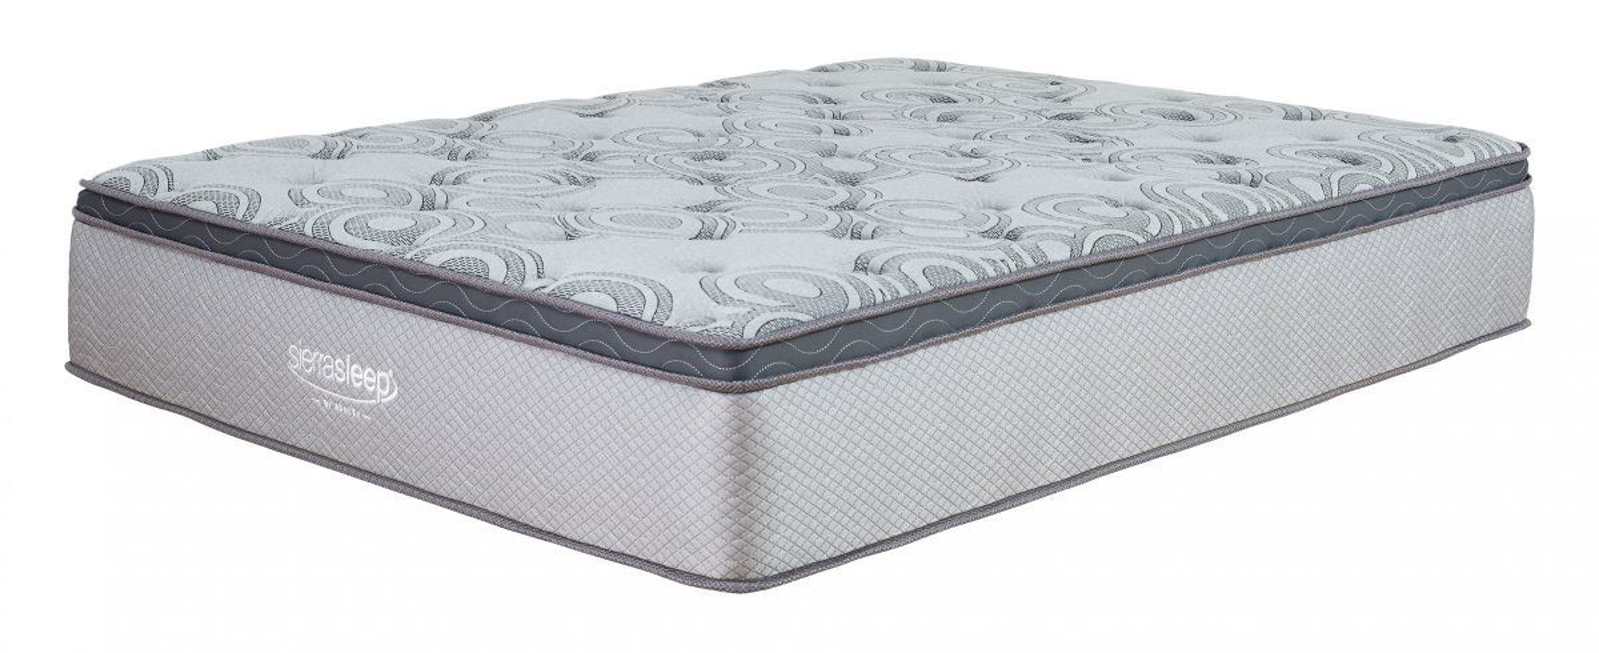 augusta queen mattress m899 31